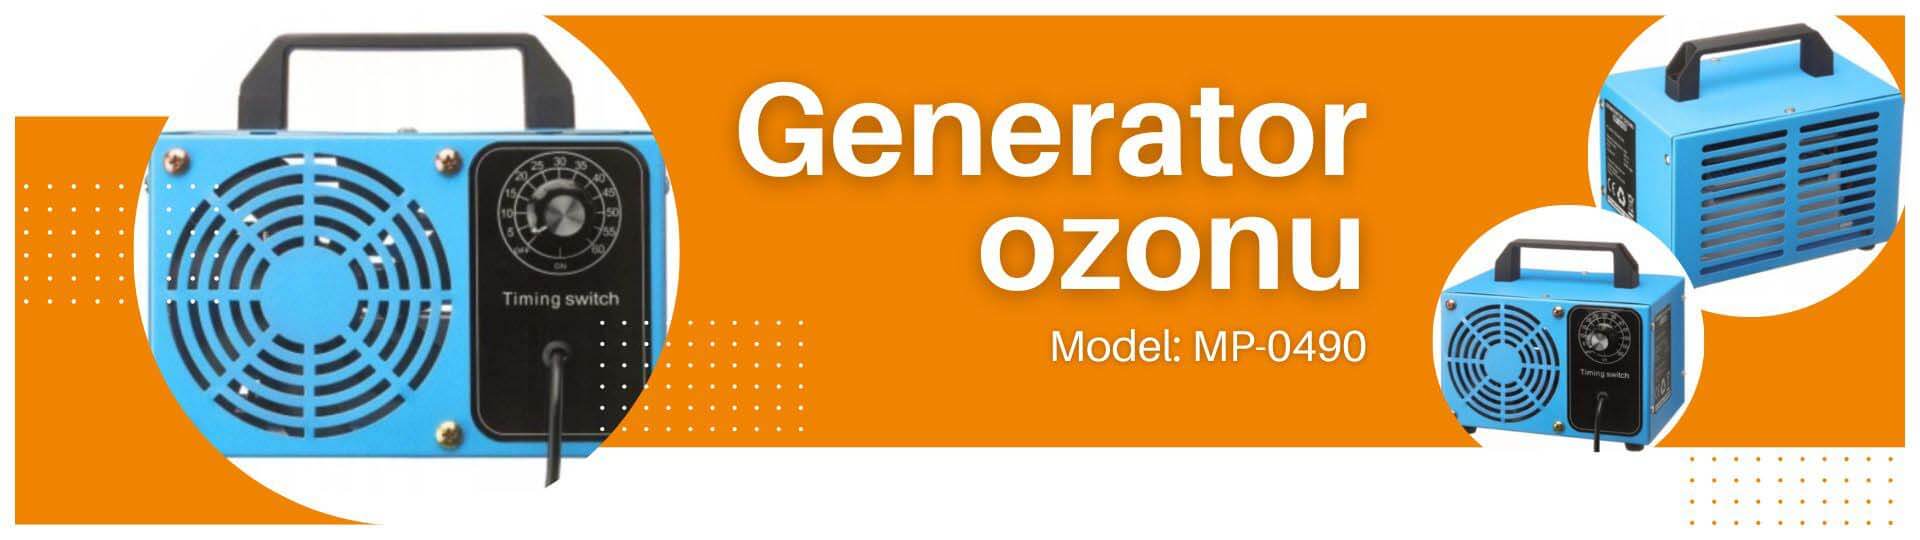 generator ozonu